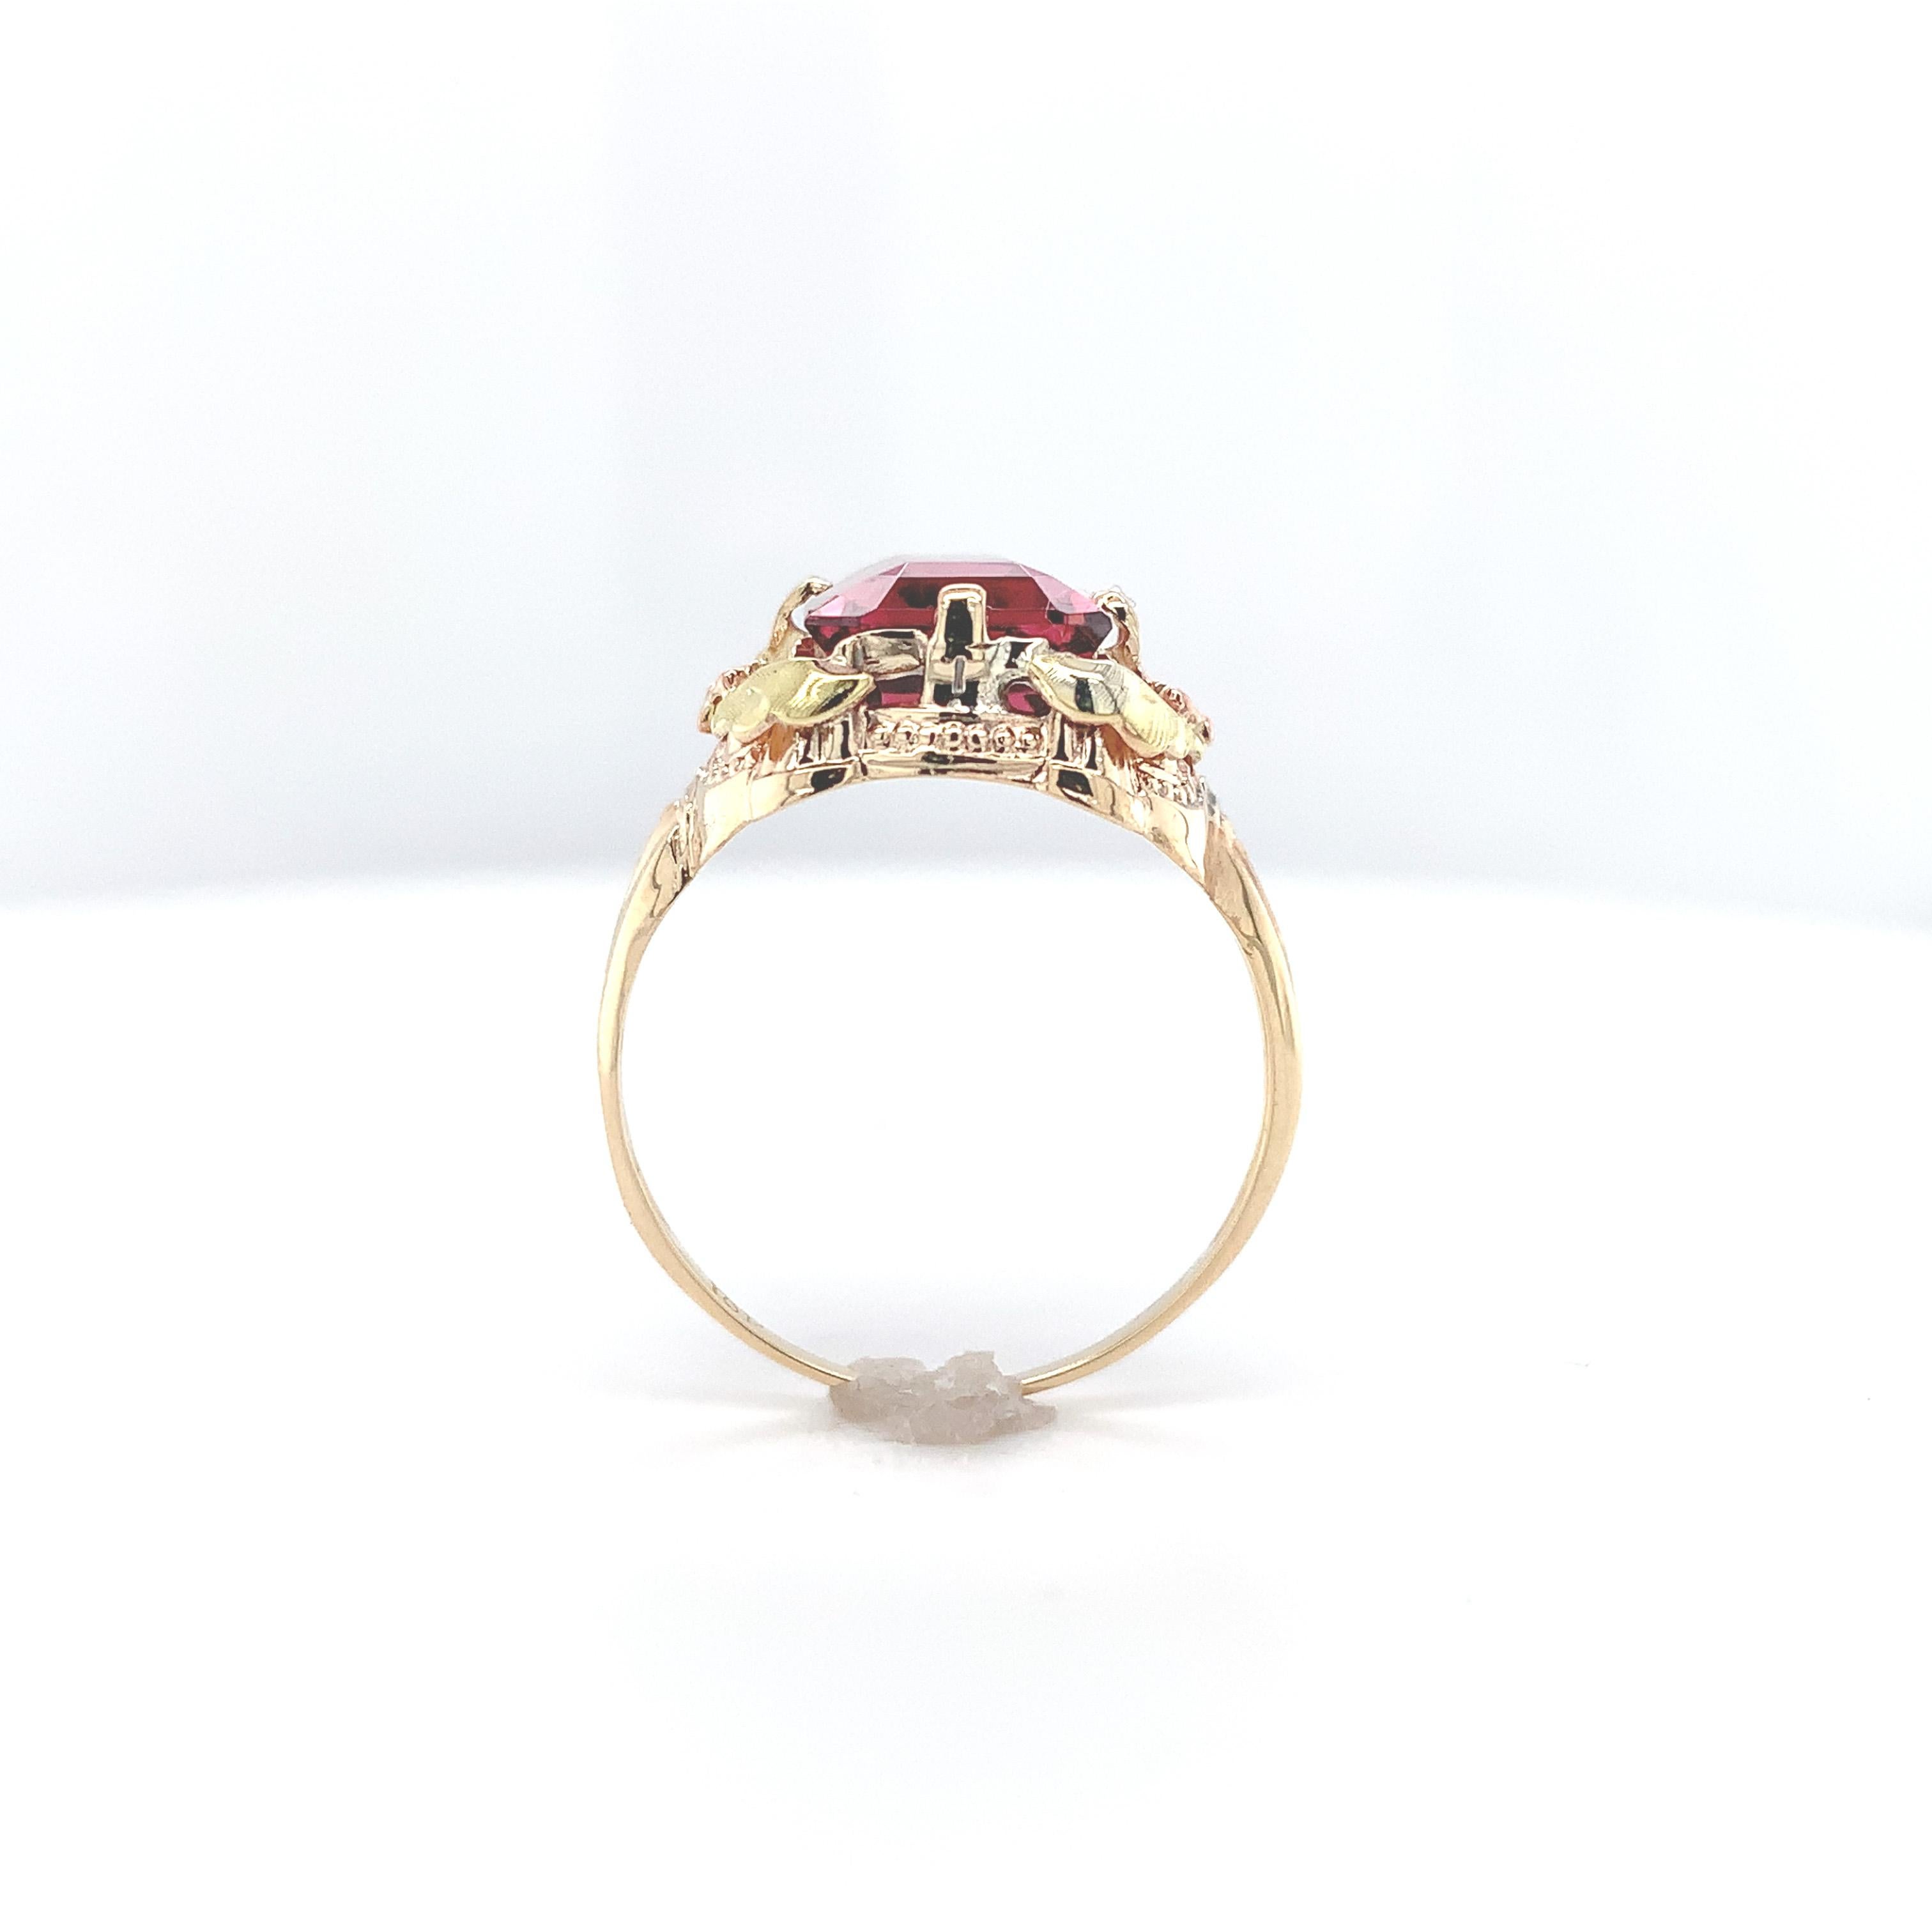 Filigraner Ring aus 10 Karat Gold mit aufgesetzten Blüten aus Roségold und Blättern aus Grüngold mit einem rosa Turmalin im Smaragdschliff. Dieser wunderschöne orangerote, granatapfelfarbene Turmalin wiegt 3,80 Karat und misst etwa 10 mm x 8 mm. Der